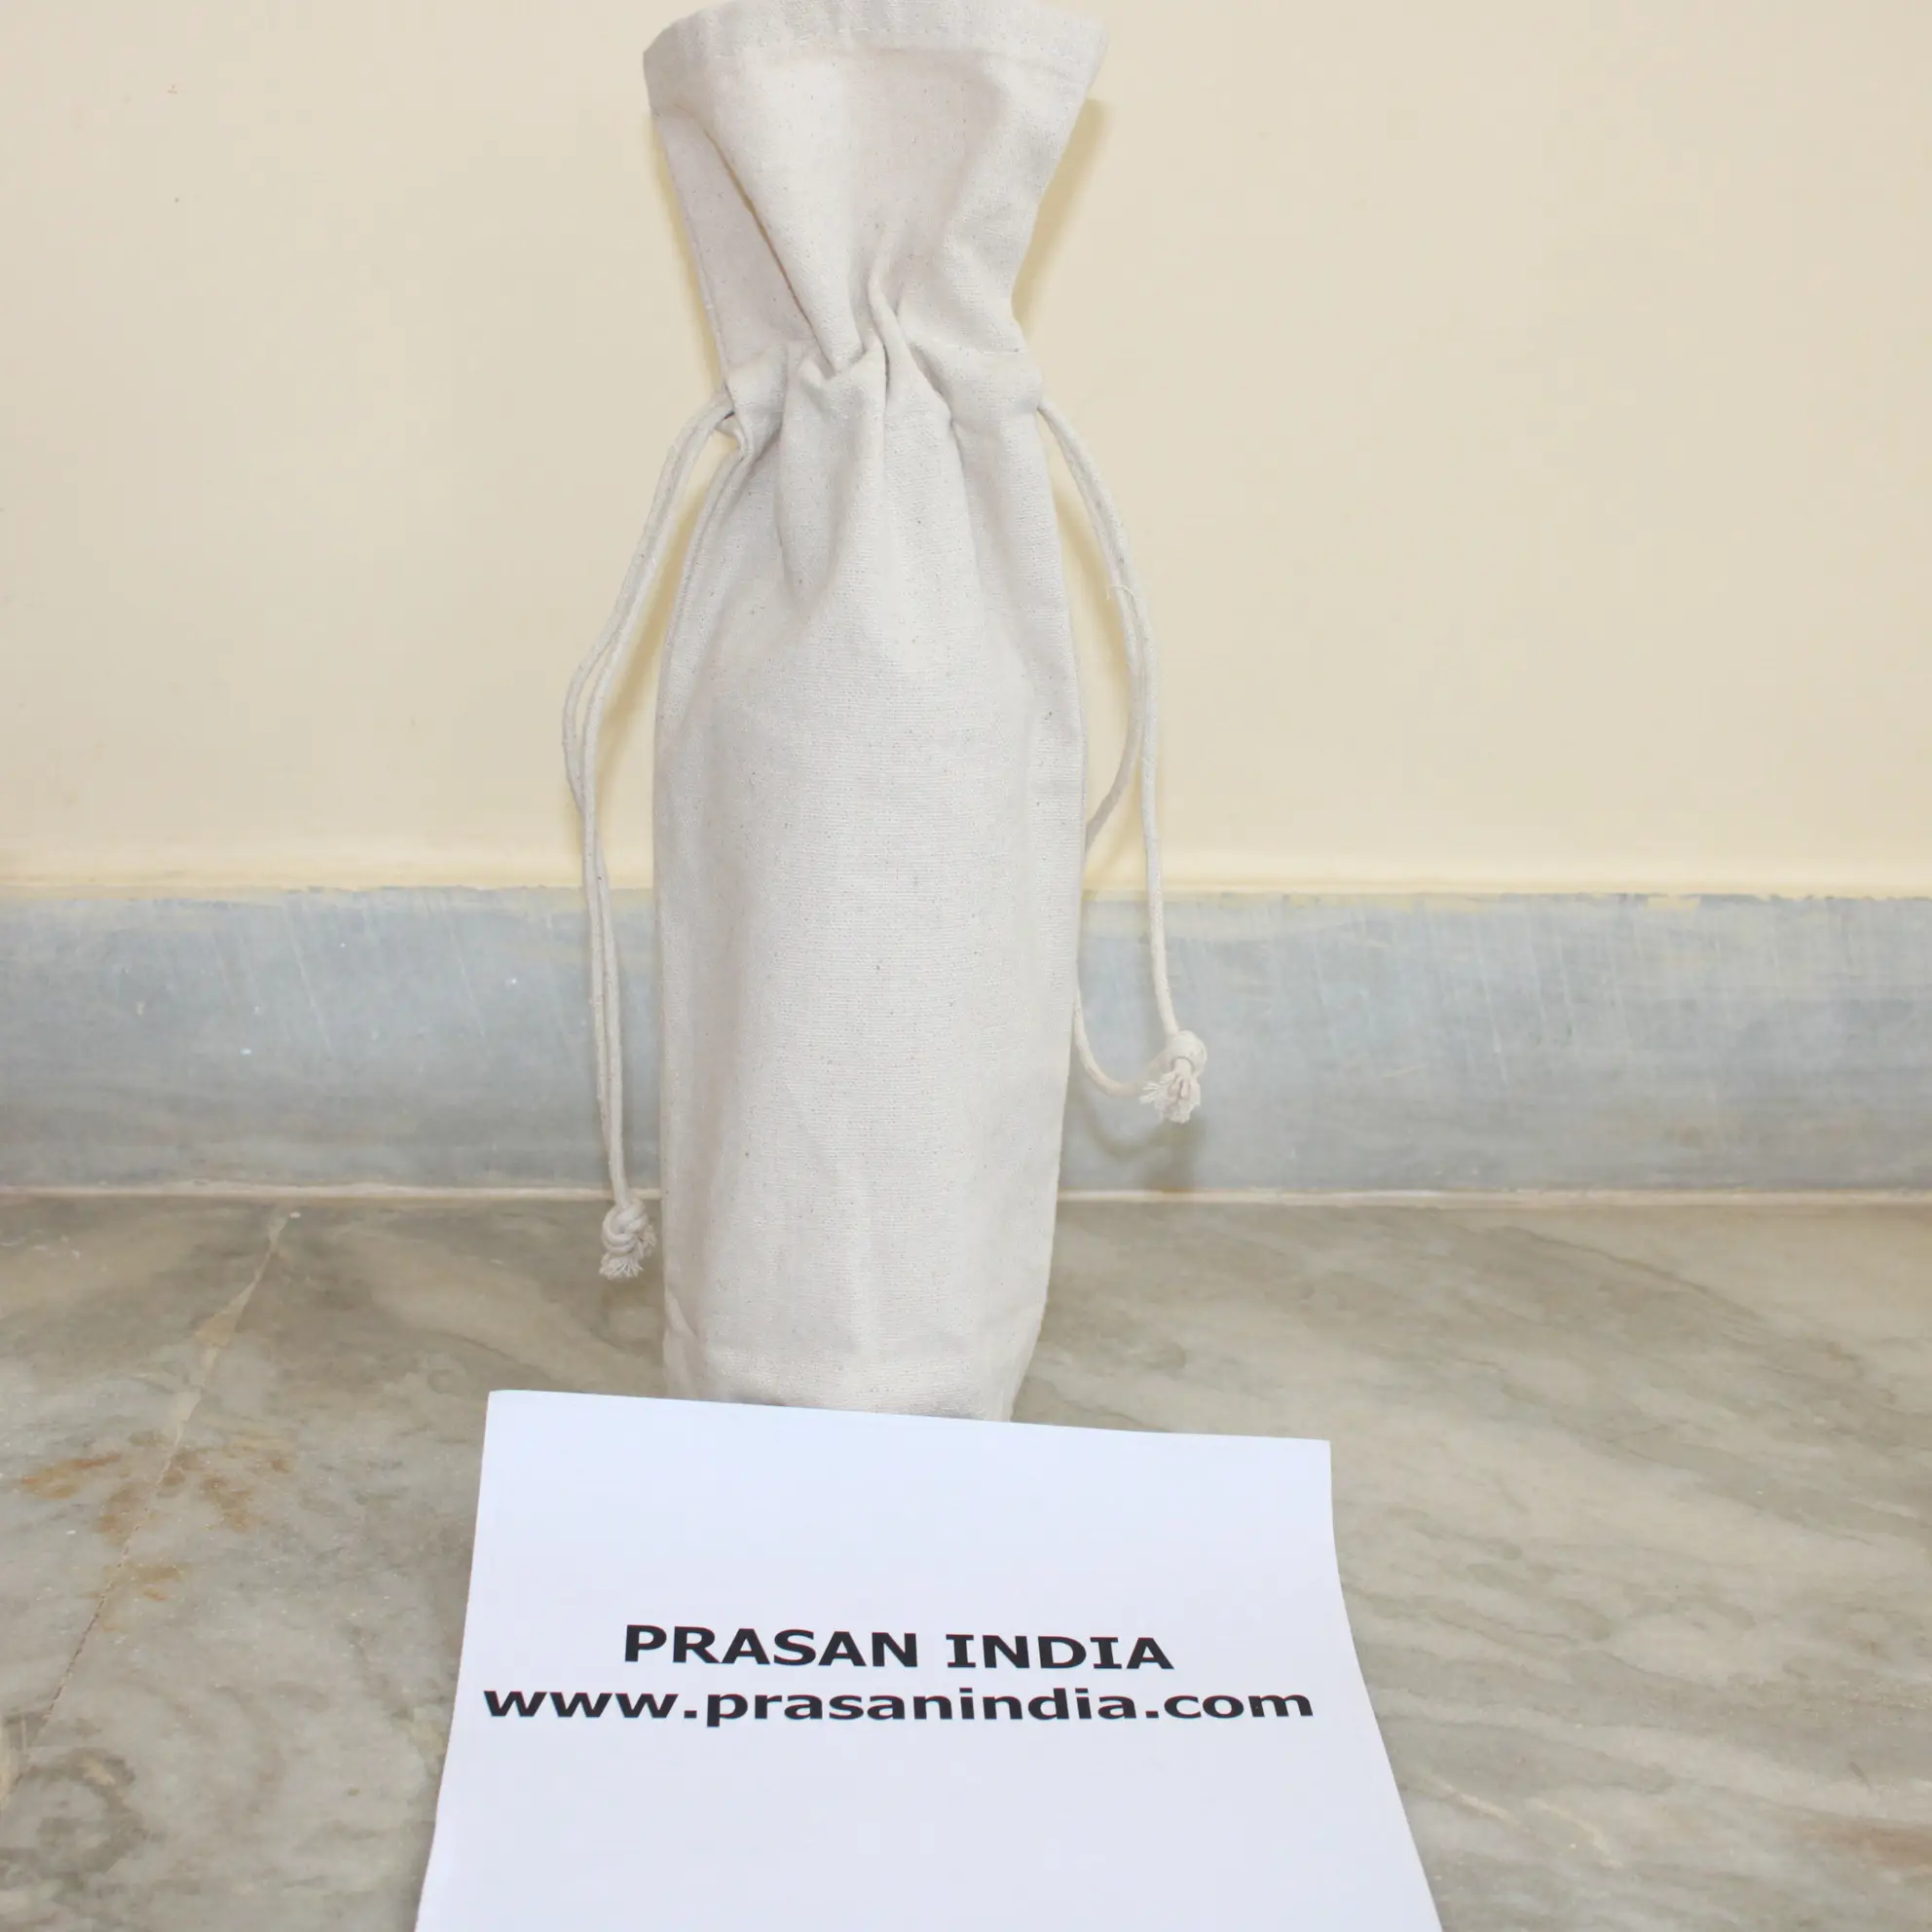 Prasan Indiaによる綿のキャリコモスリンキャンバス無漂白生地で作られた耐久性のある1つのシングルボトルバッグ